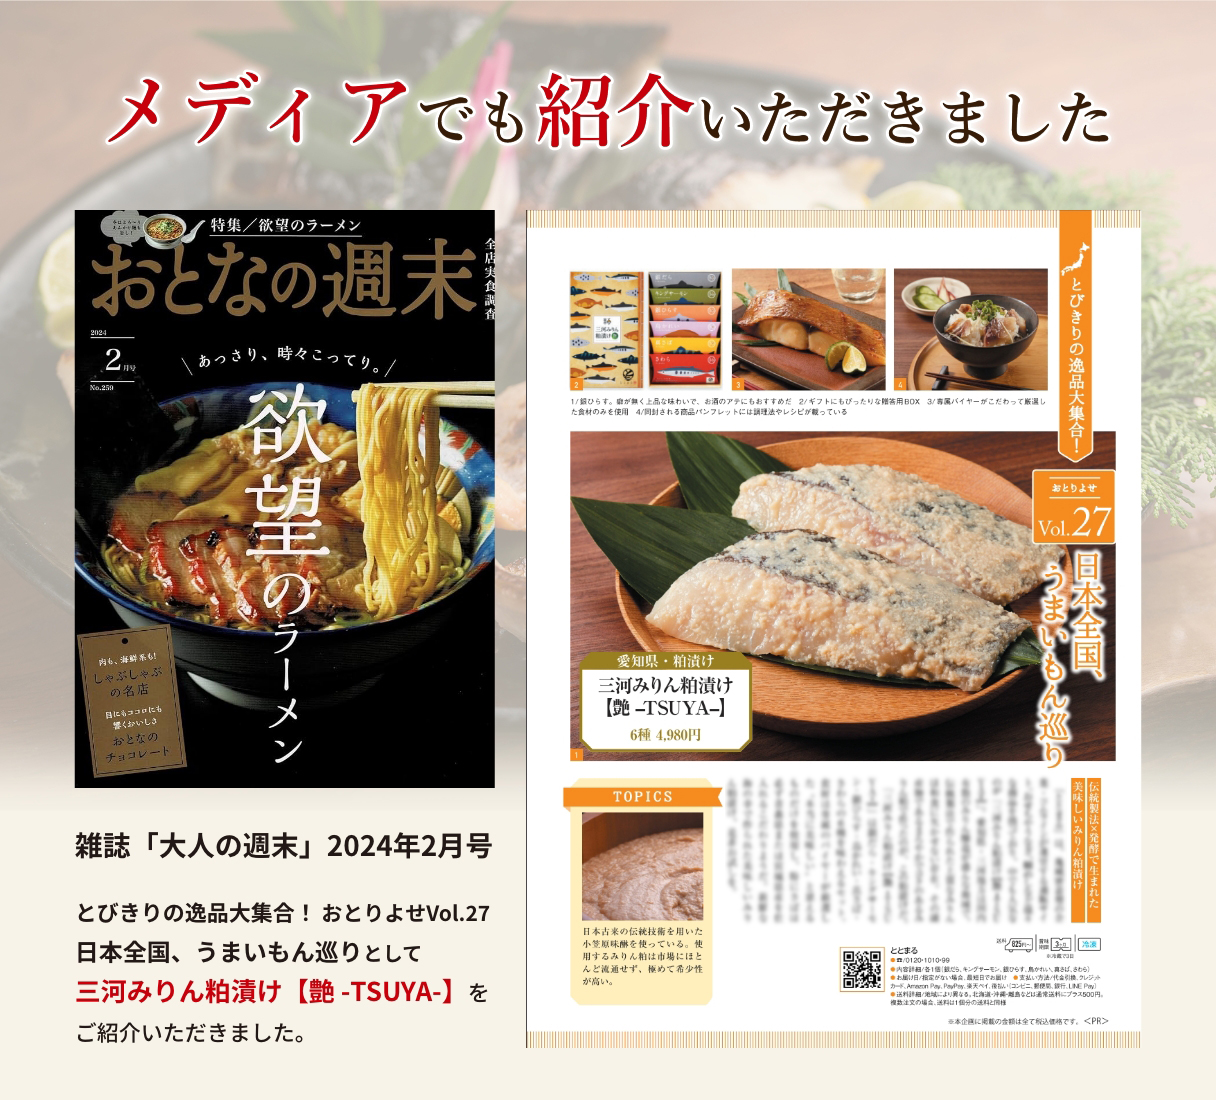 雑誌「大人の週末」で三河みりん粕漬け【艶 -TSUYA-】を
ご紹介いただきました。